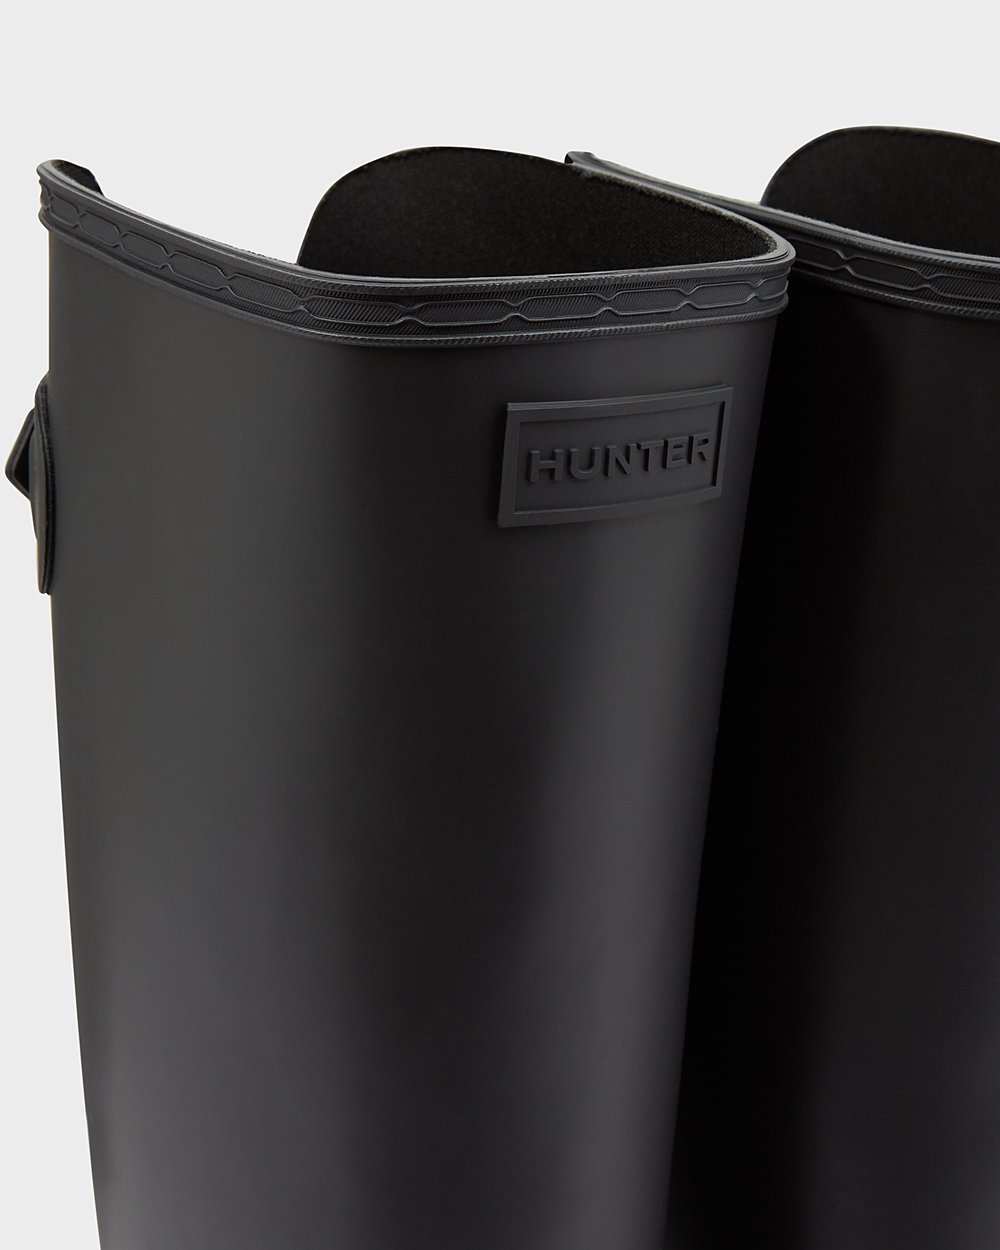 Womens Tall Rain Boots - Hunter Refined Slim Fit Adjustable (23ZPQGMKX) - Black